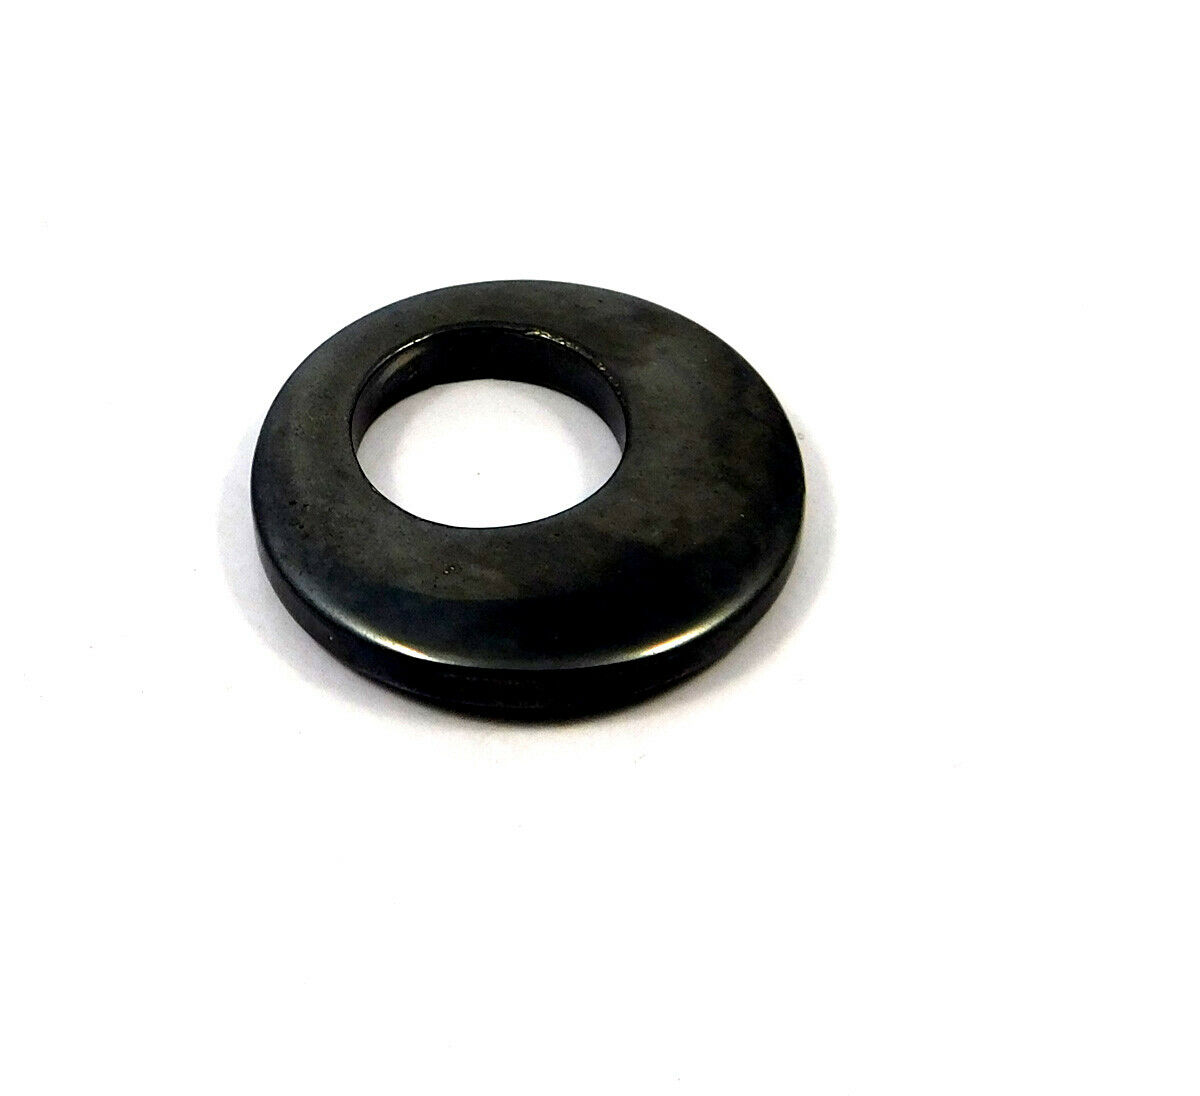 35 Cts. 100% Natural Hematite Round Donut Pendant Beads Gemstone Jc10467